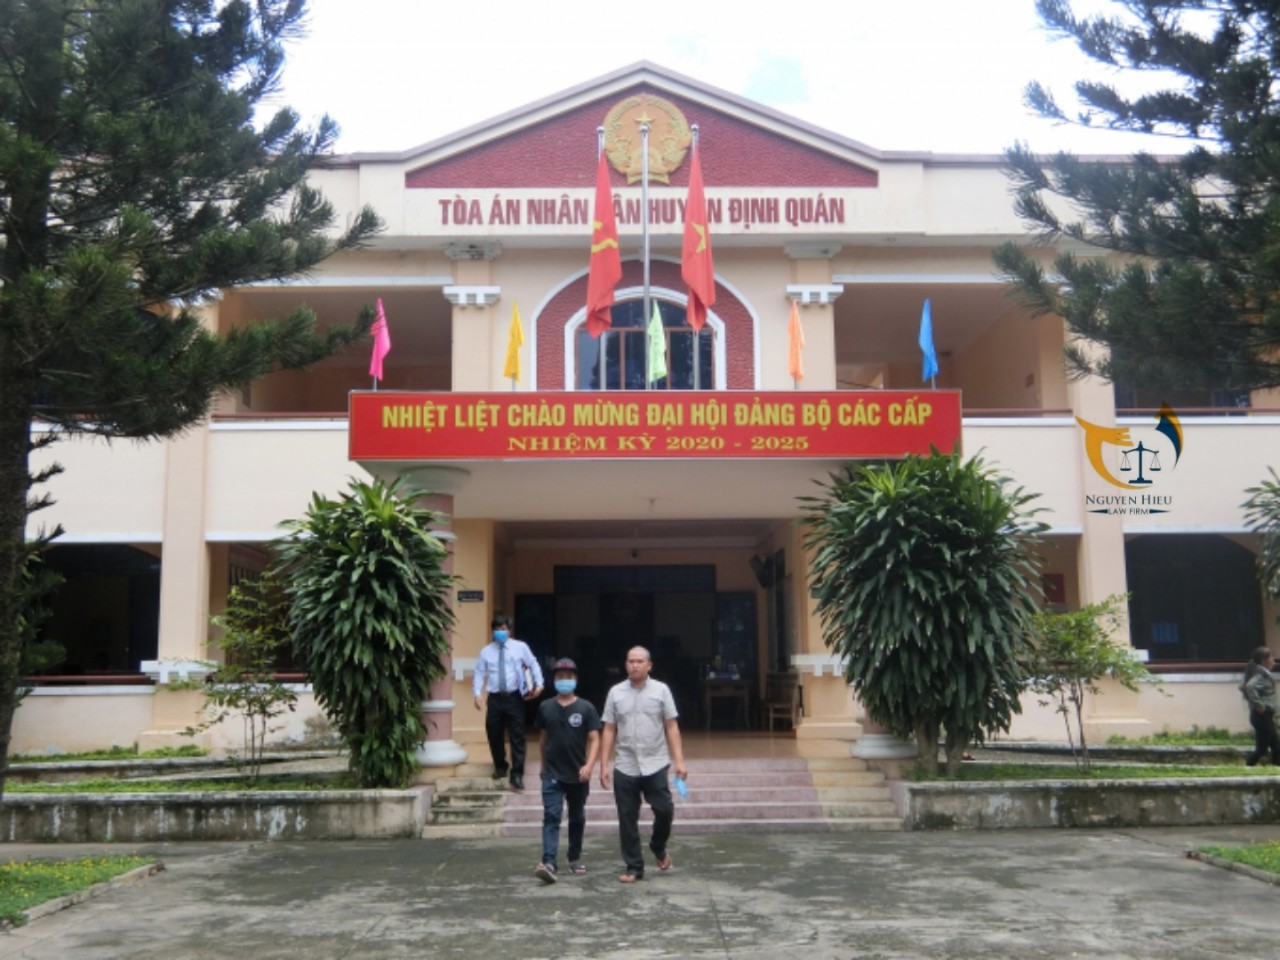 Tòa án nhân dân huyện Định Quán, tỉnh Đồng Nai